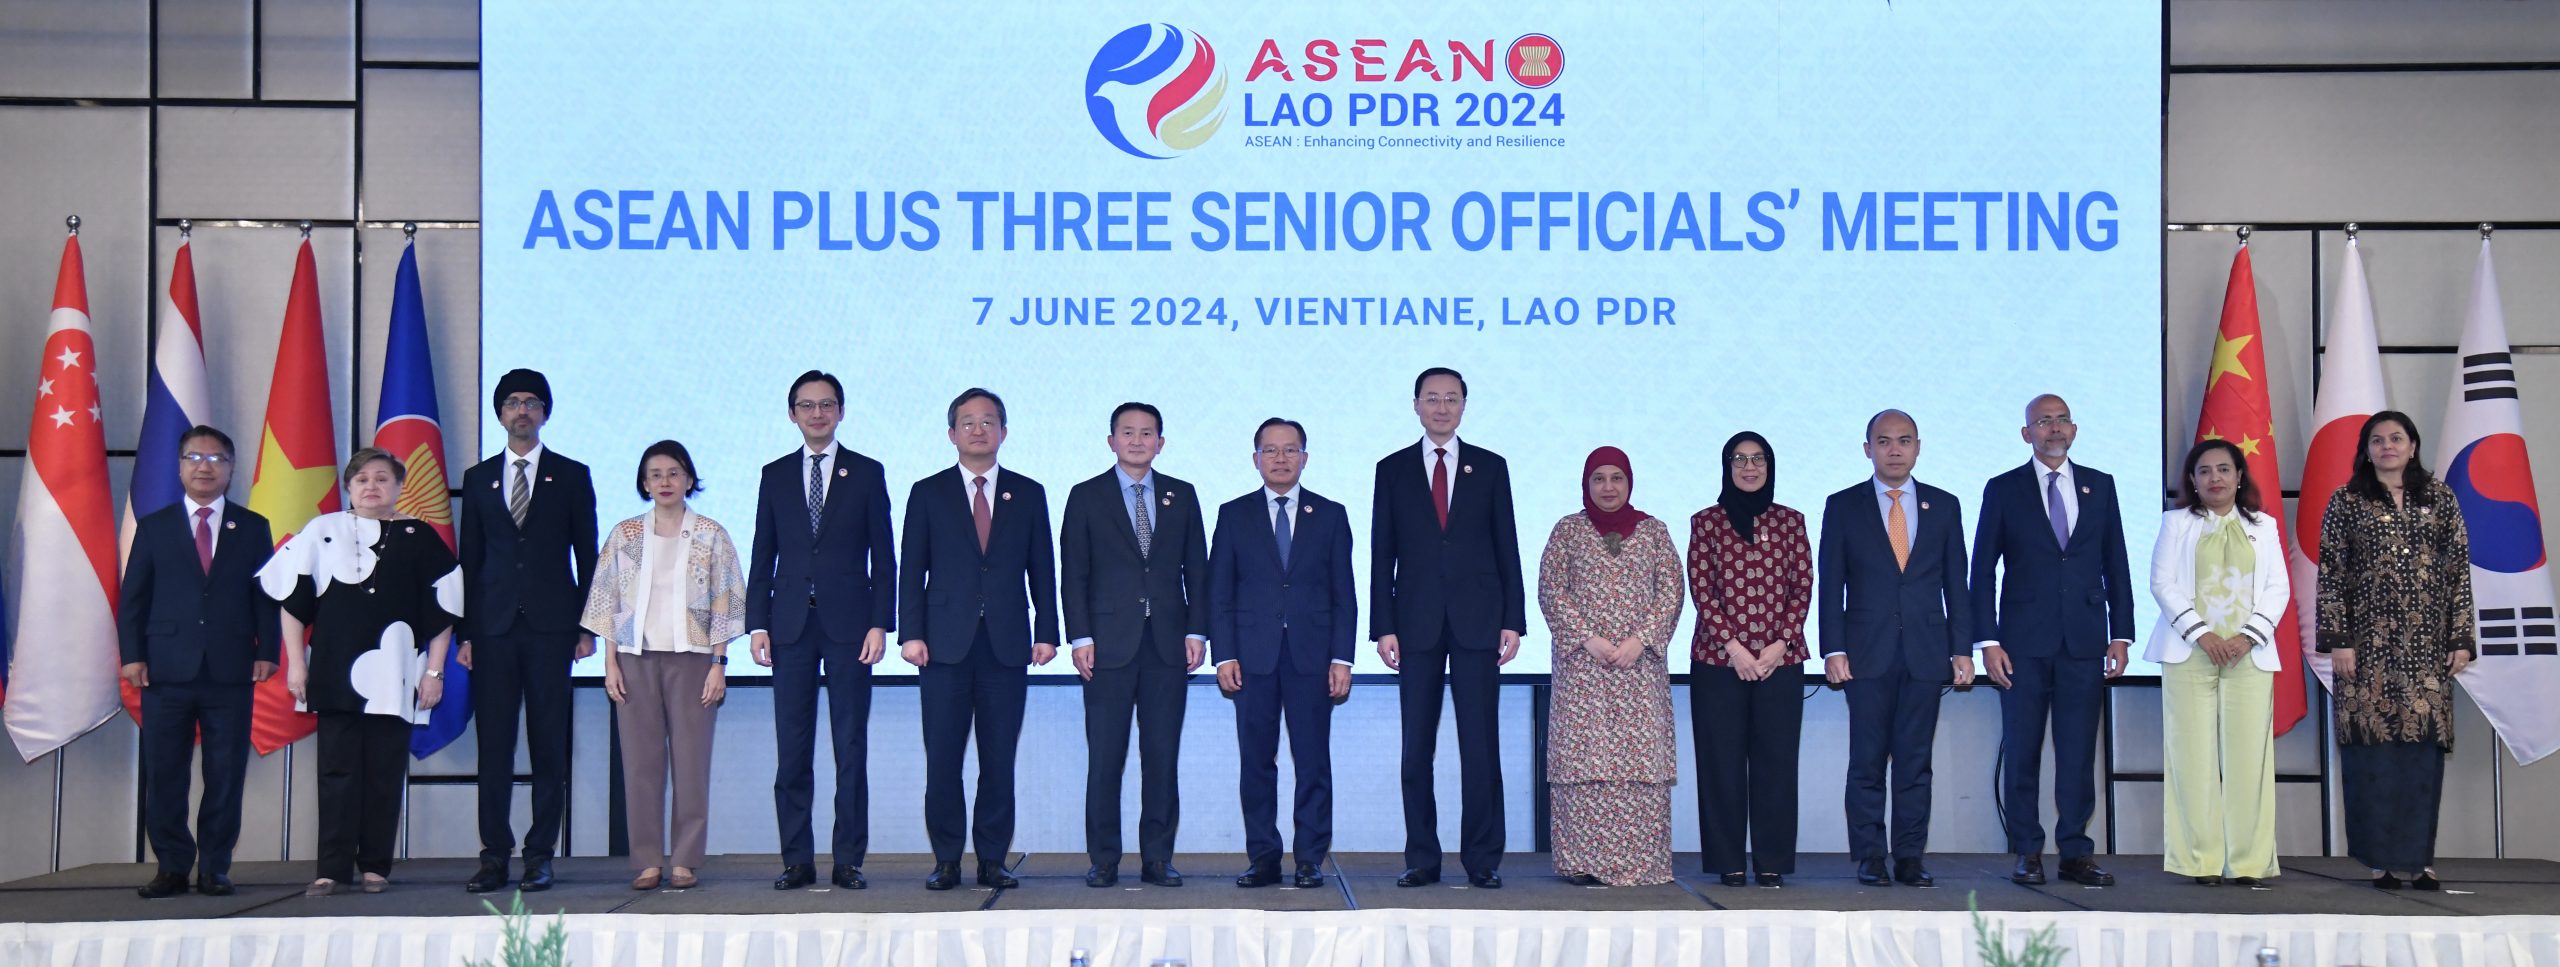 ASEAN Plus Three Senior Officials’ Meeting convenes in Vientiane, Lao PDR